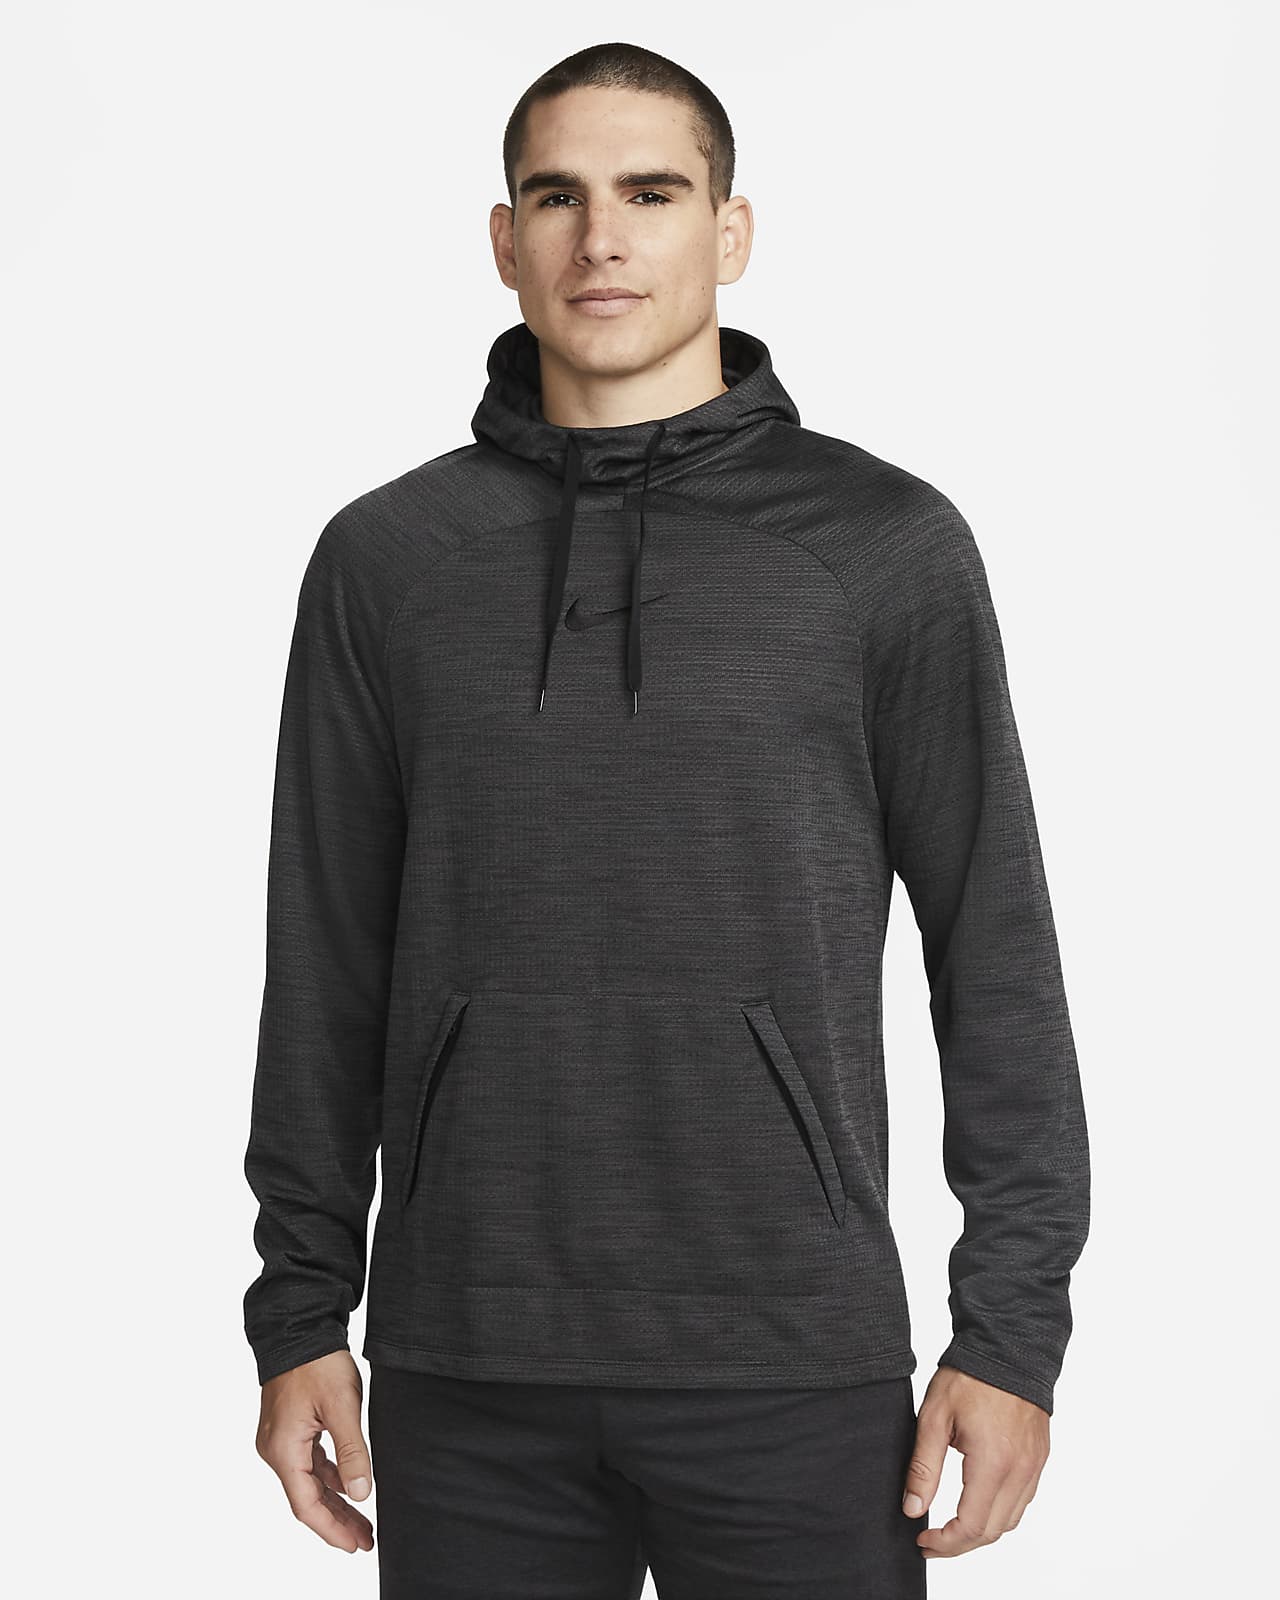 Pánské fotbalové tričko Nike Academy Dri-FIT s dlouhým rukávem a kapucí